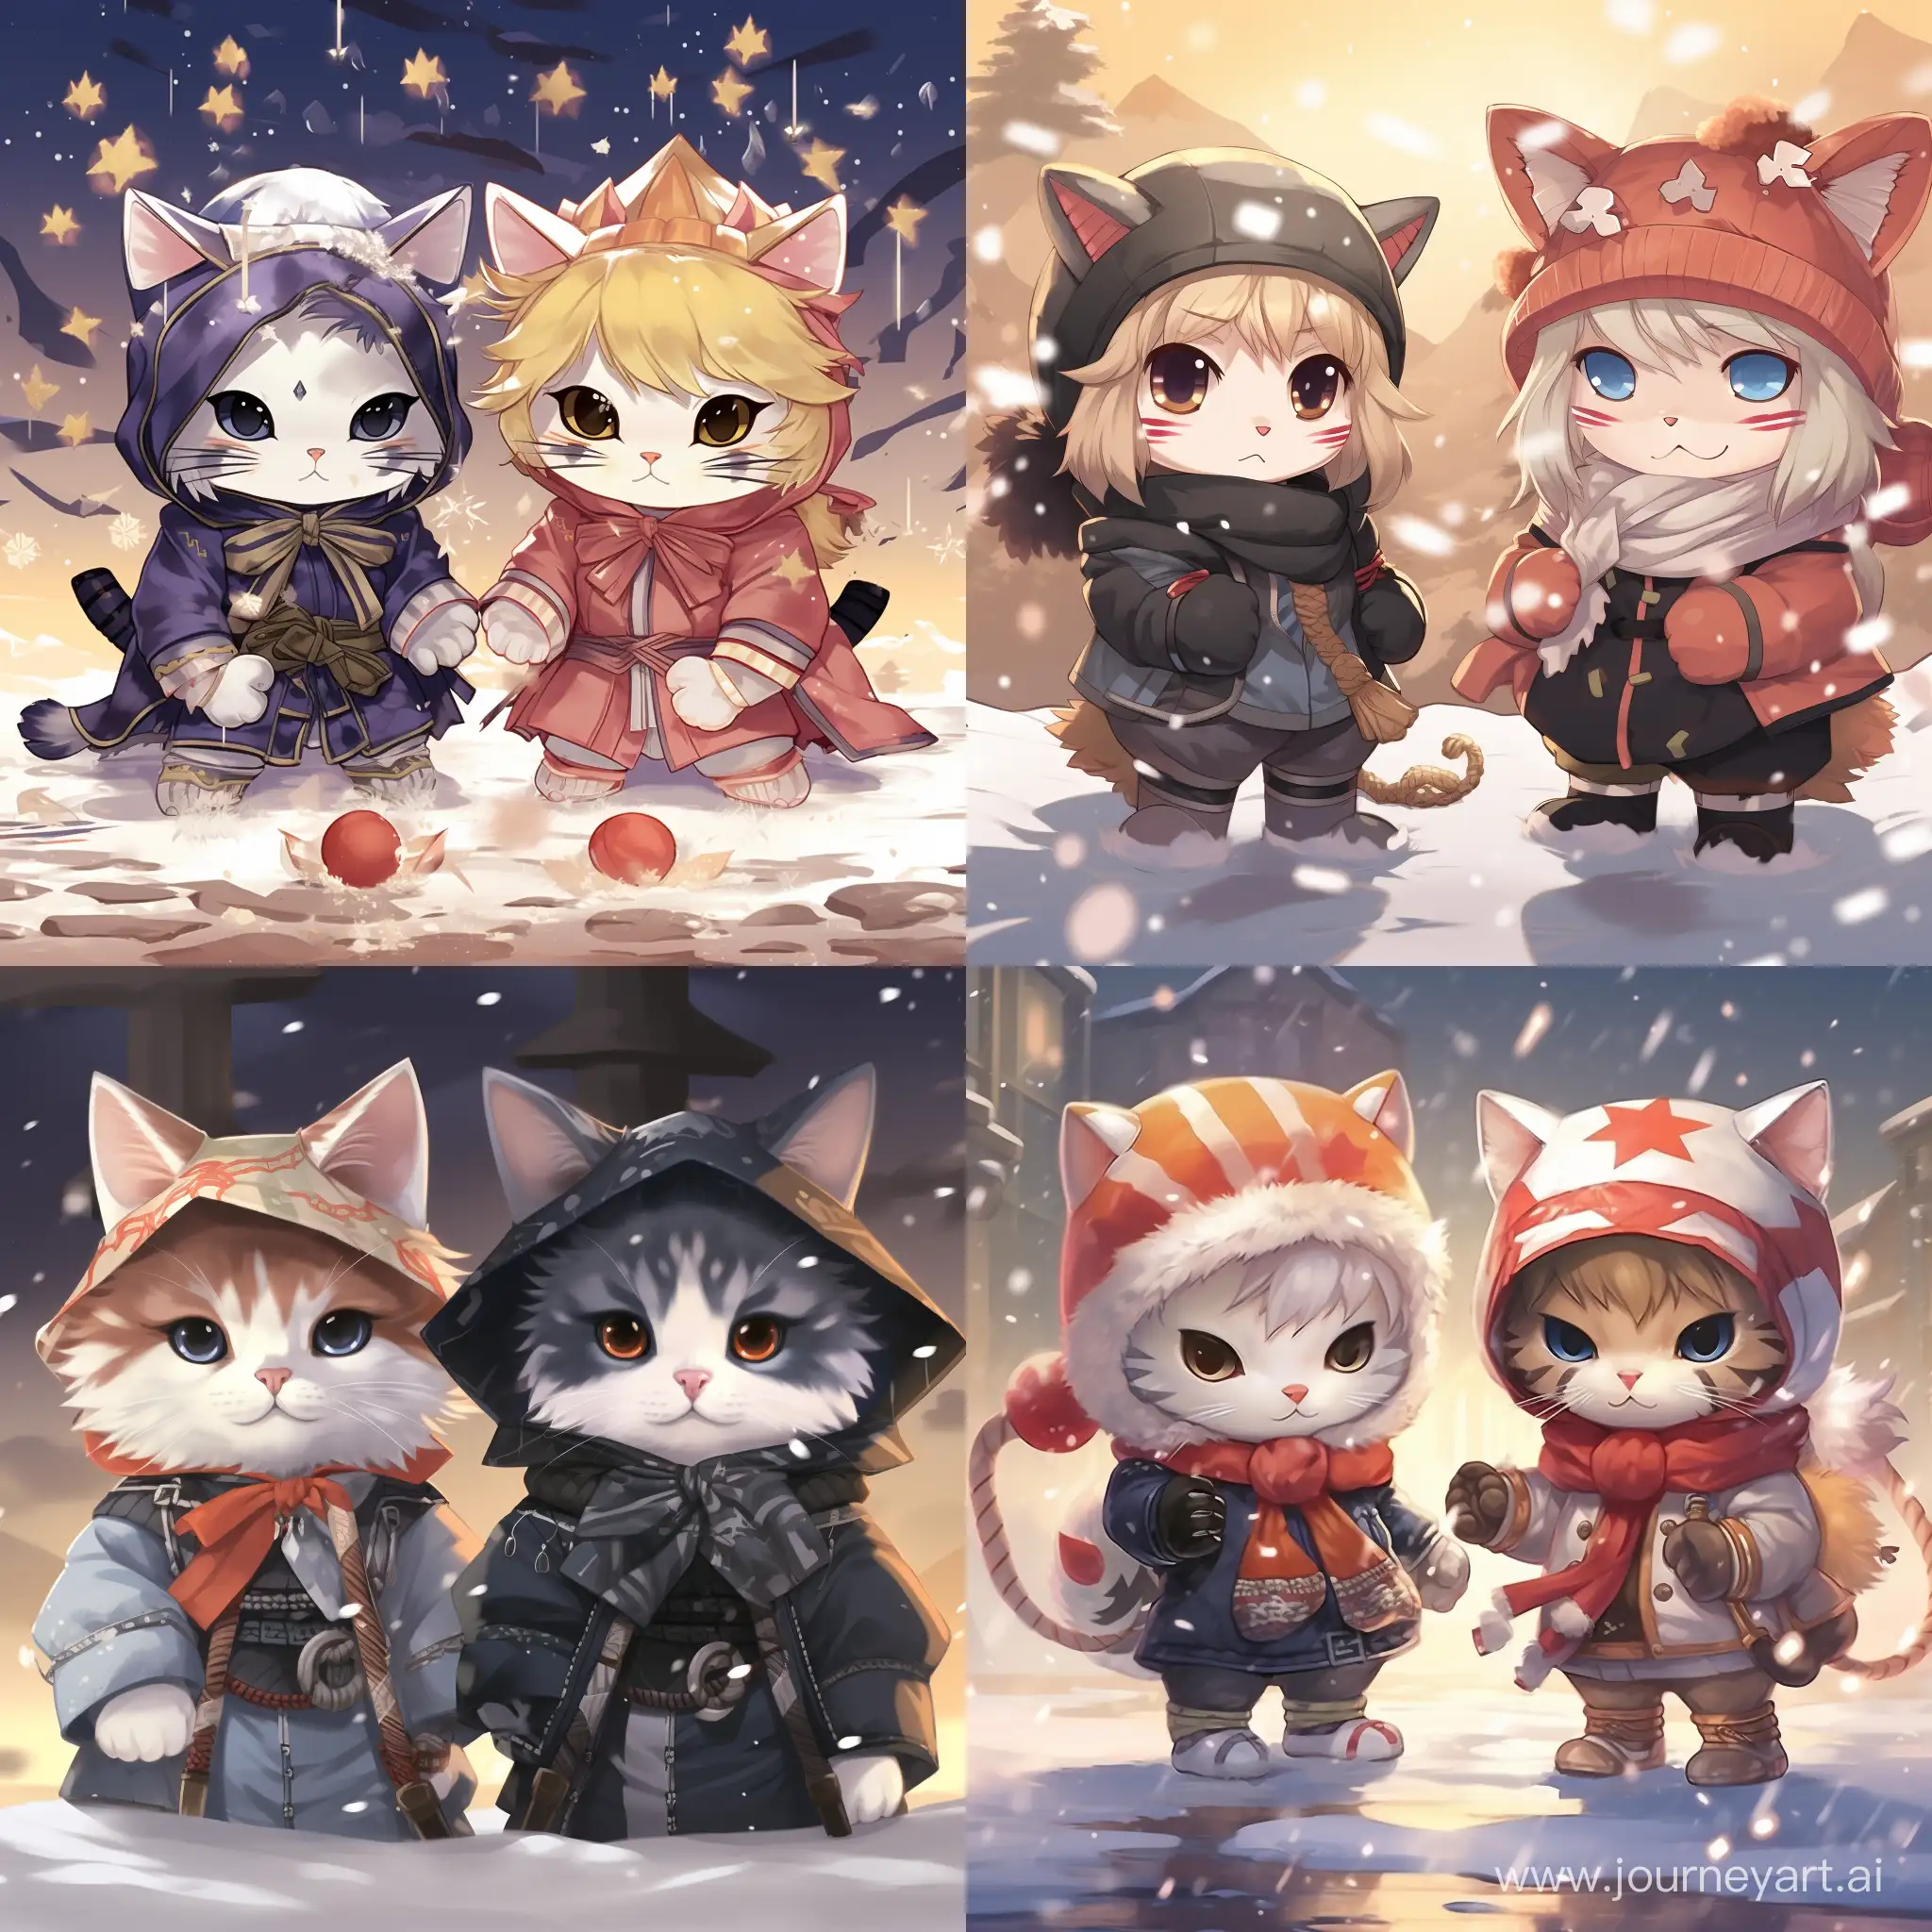 Котики в одежде в аниме стиле "магическая битва"  в новогодних шляпах под снегом